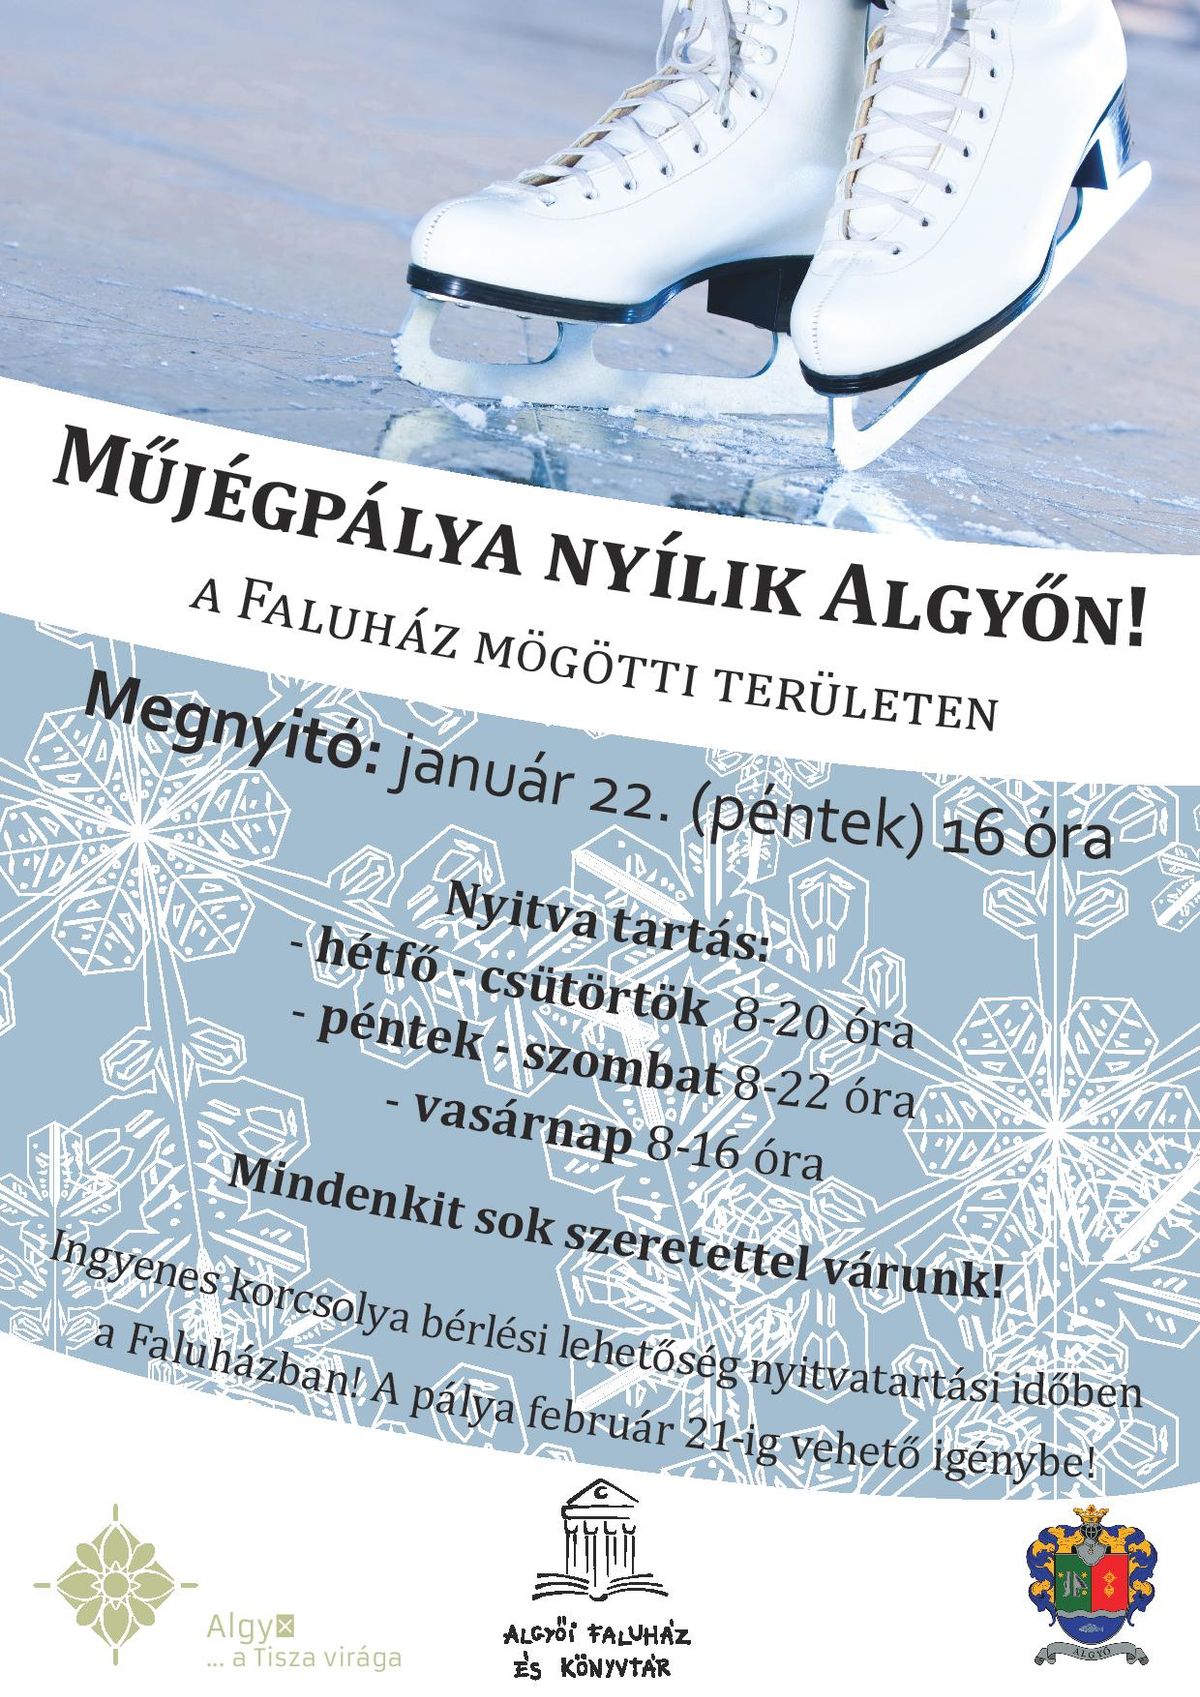 jegpalya_plakat-page-001